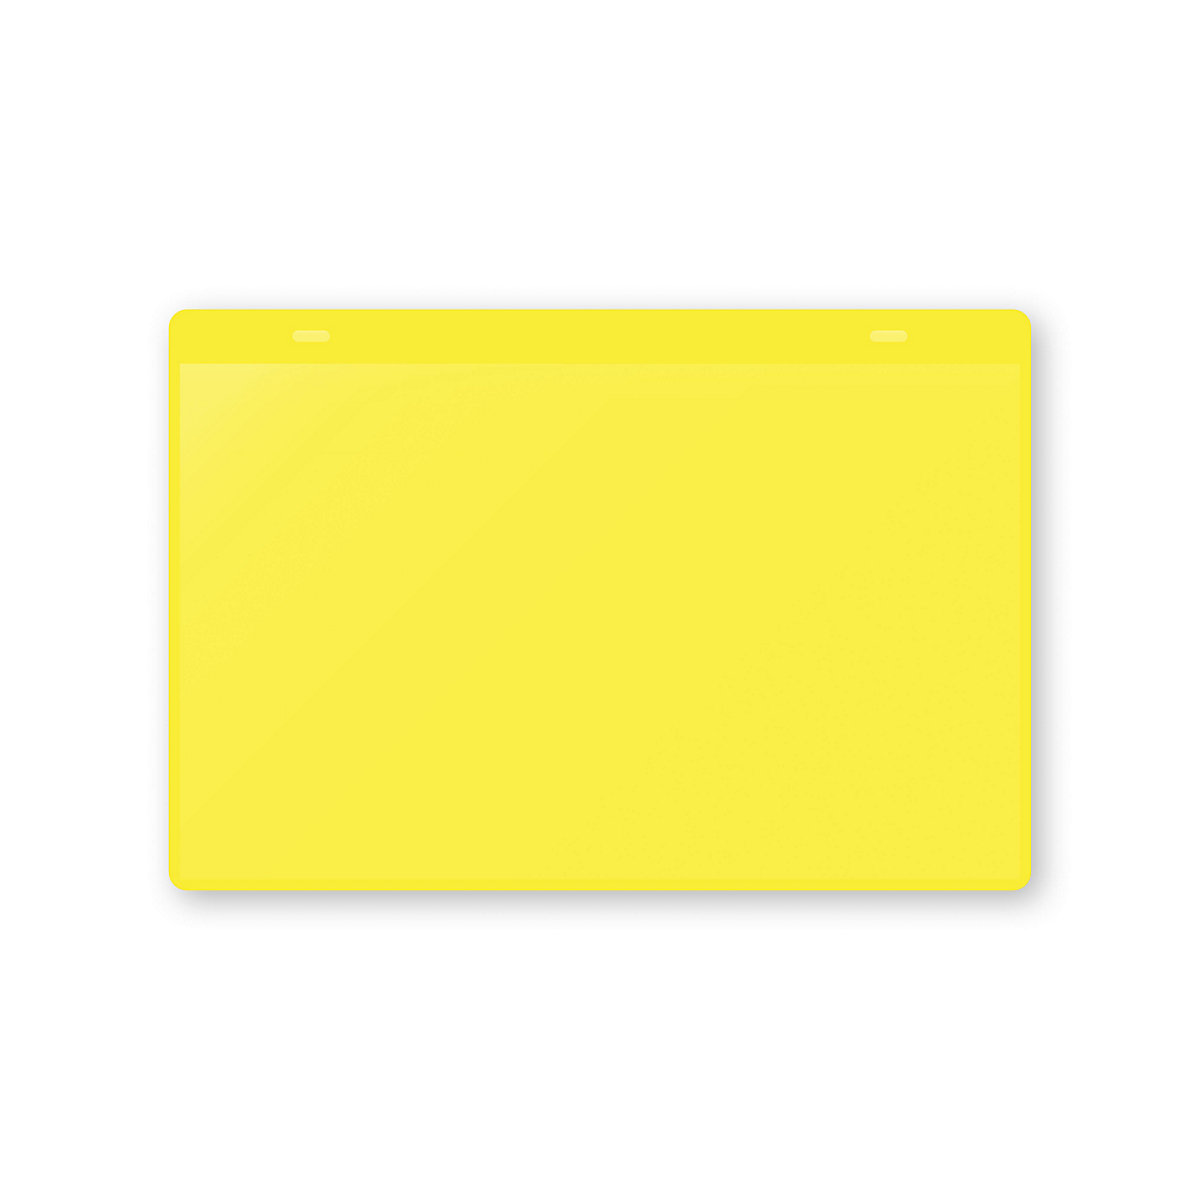 Dokumentumtartó tasakok akasztópánttal, DIN A5, fekvő, cs. e. 10 db, sárga